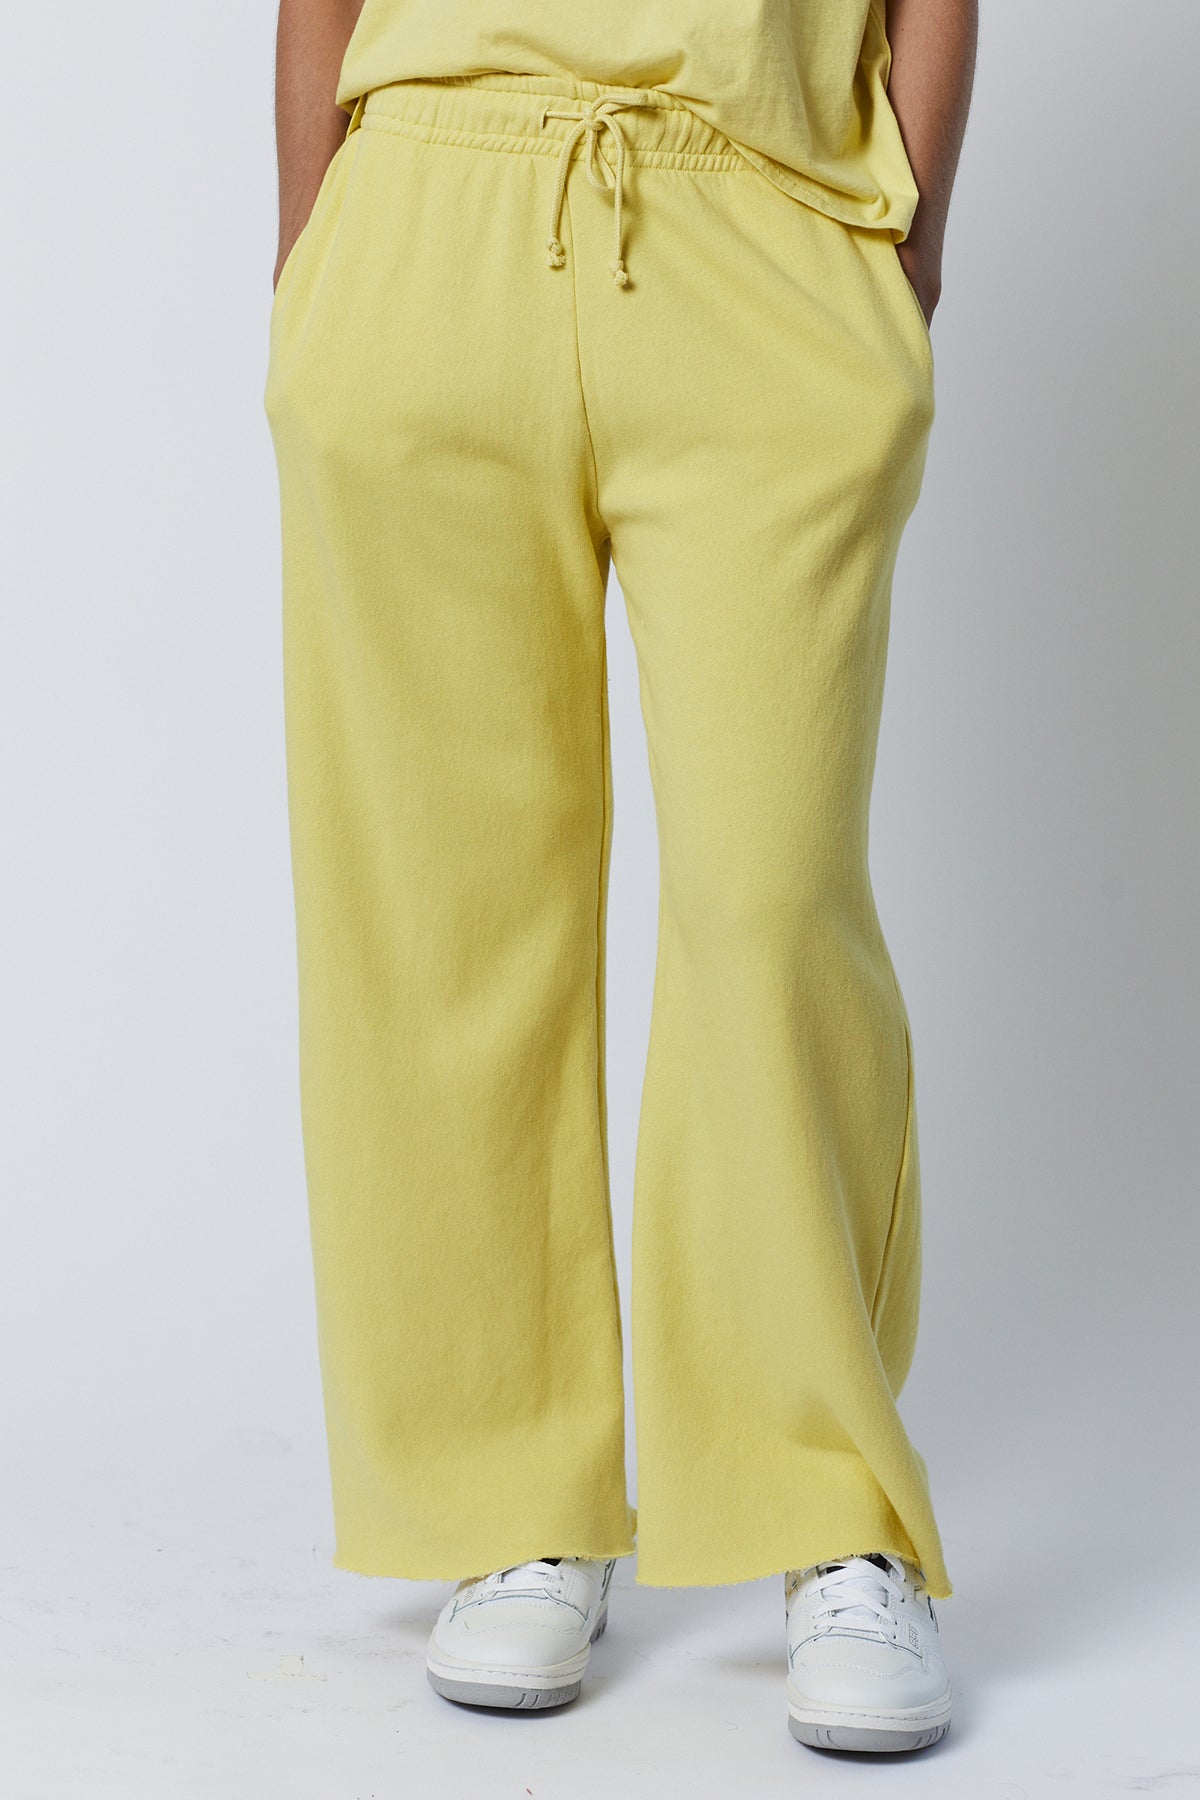   Montecito Sweatpant in lemon yellow front 